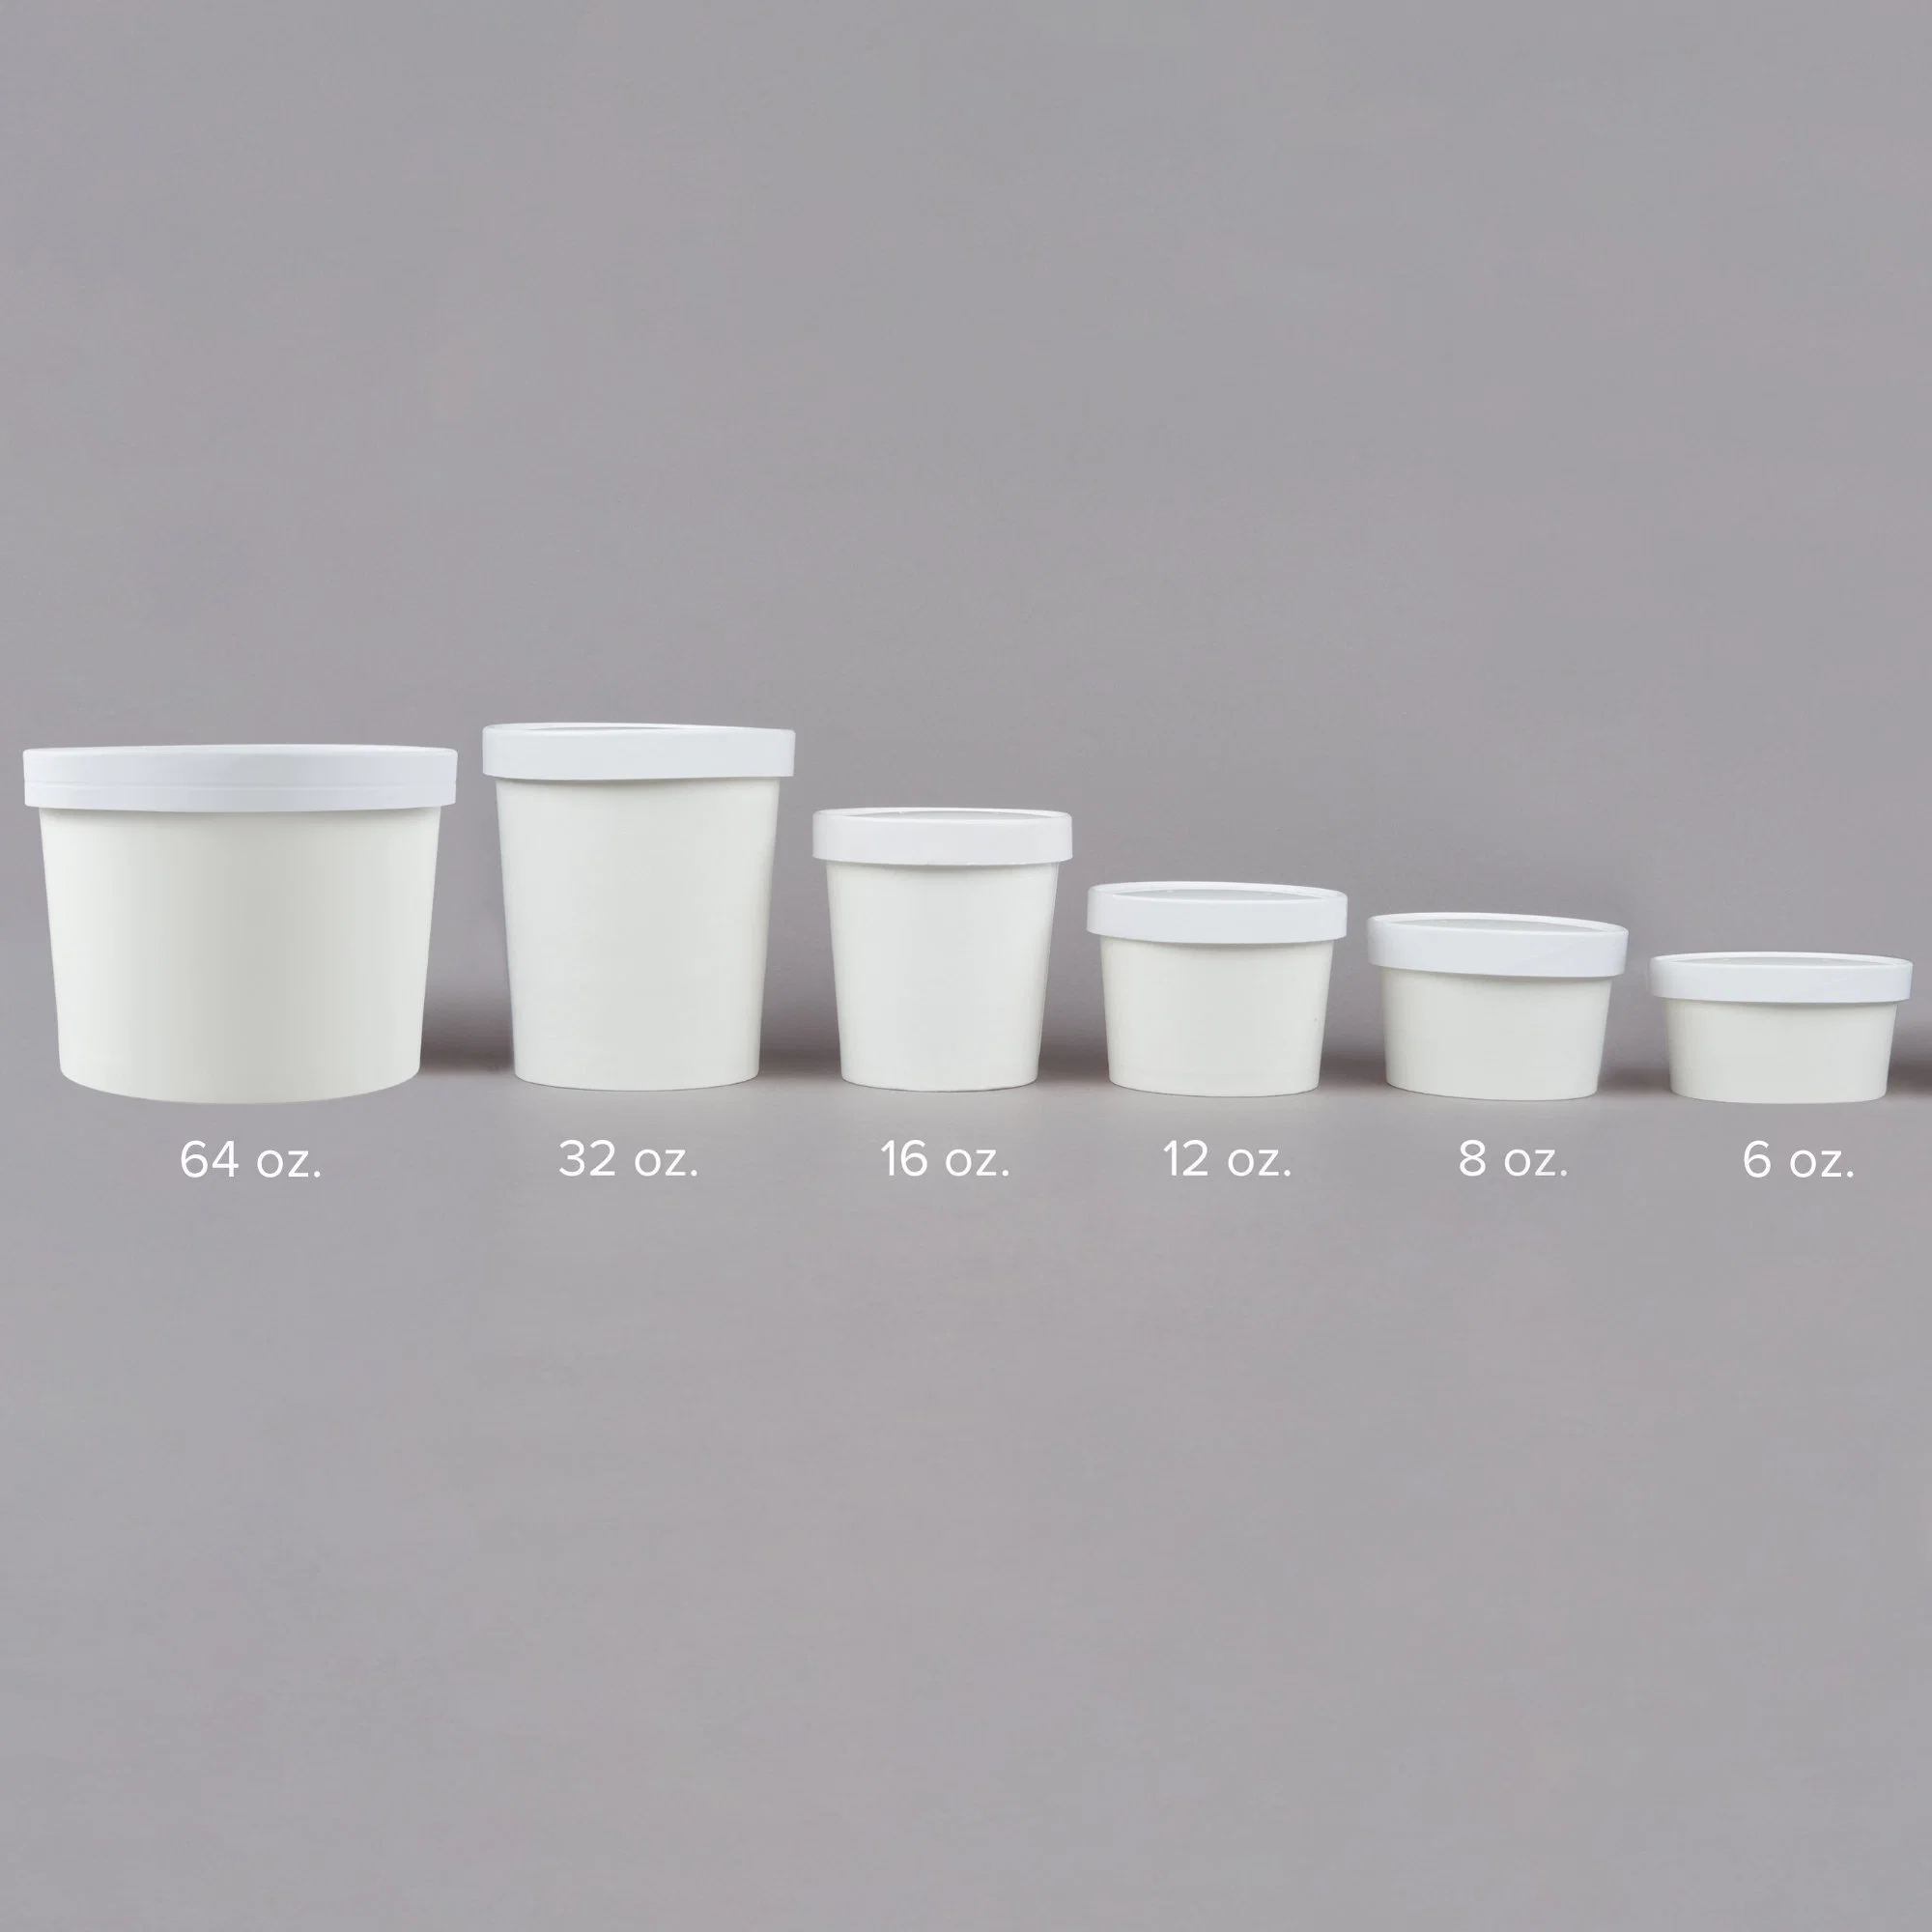 Eis Tasse Tassen Kaffee Tassen Eis Verpackung Tasse Biologisch Abbaubarer Icecream Kaffee Einweg